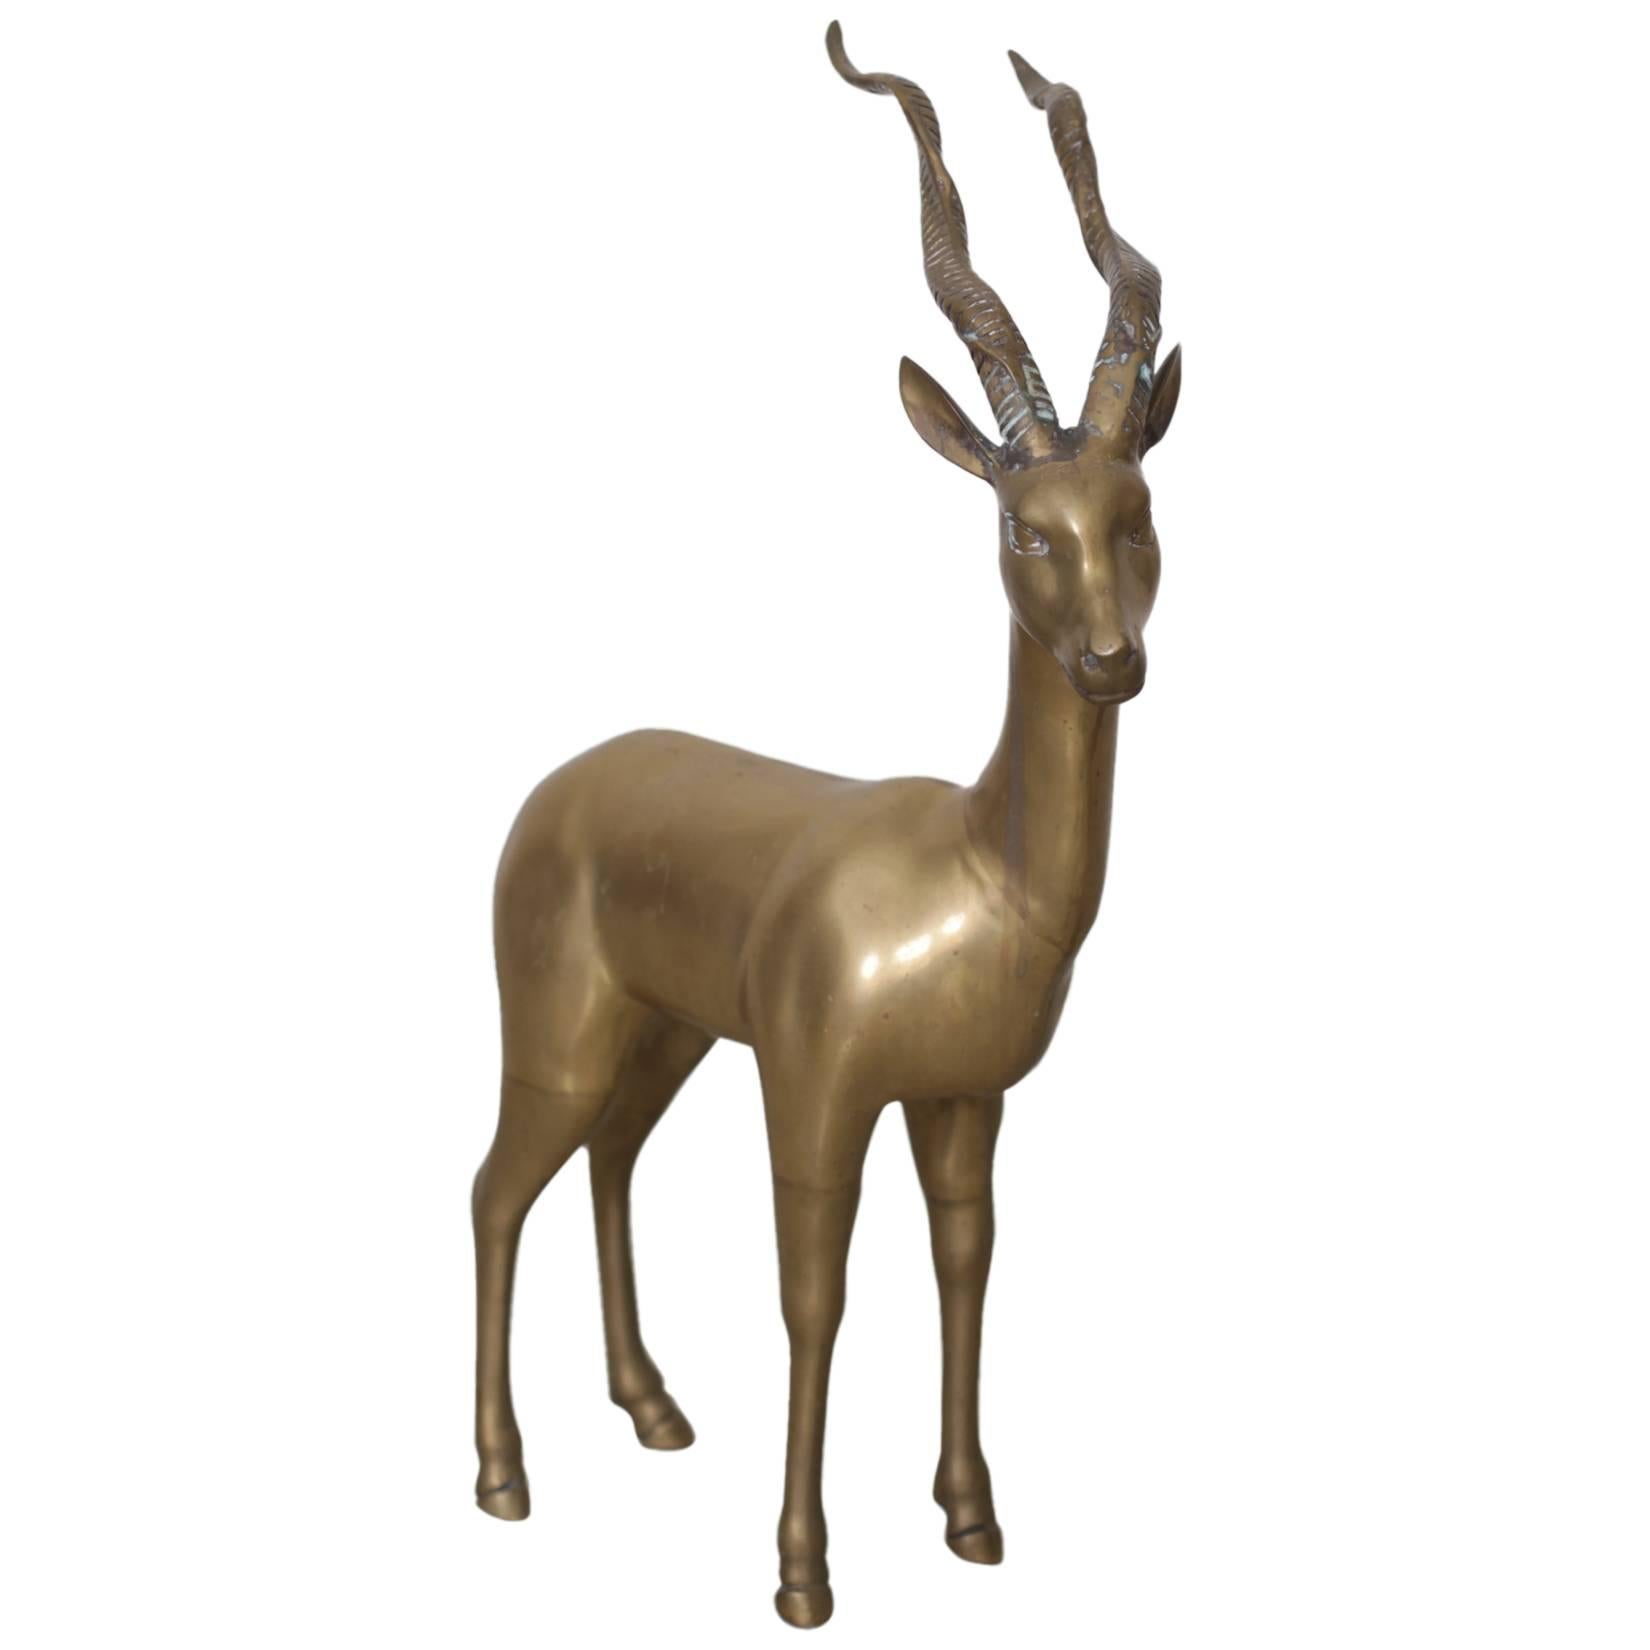 Extraordinary Huge Brass Ibex or Deer